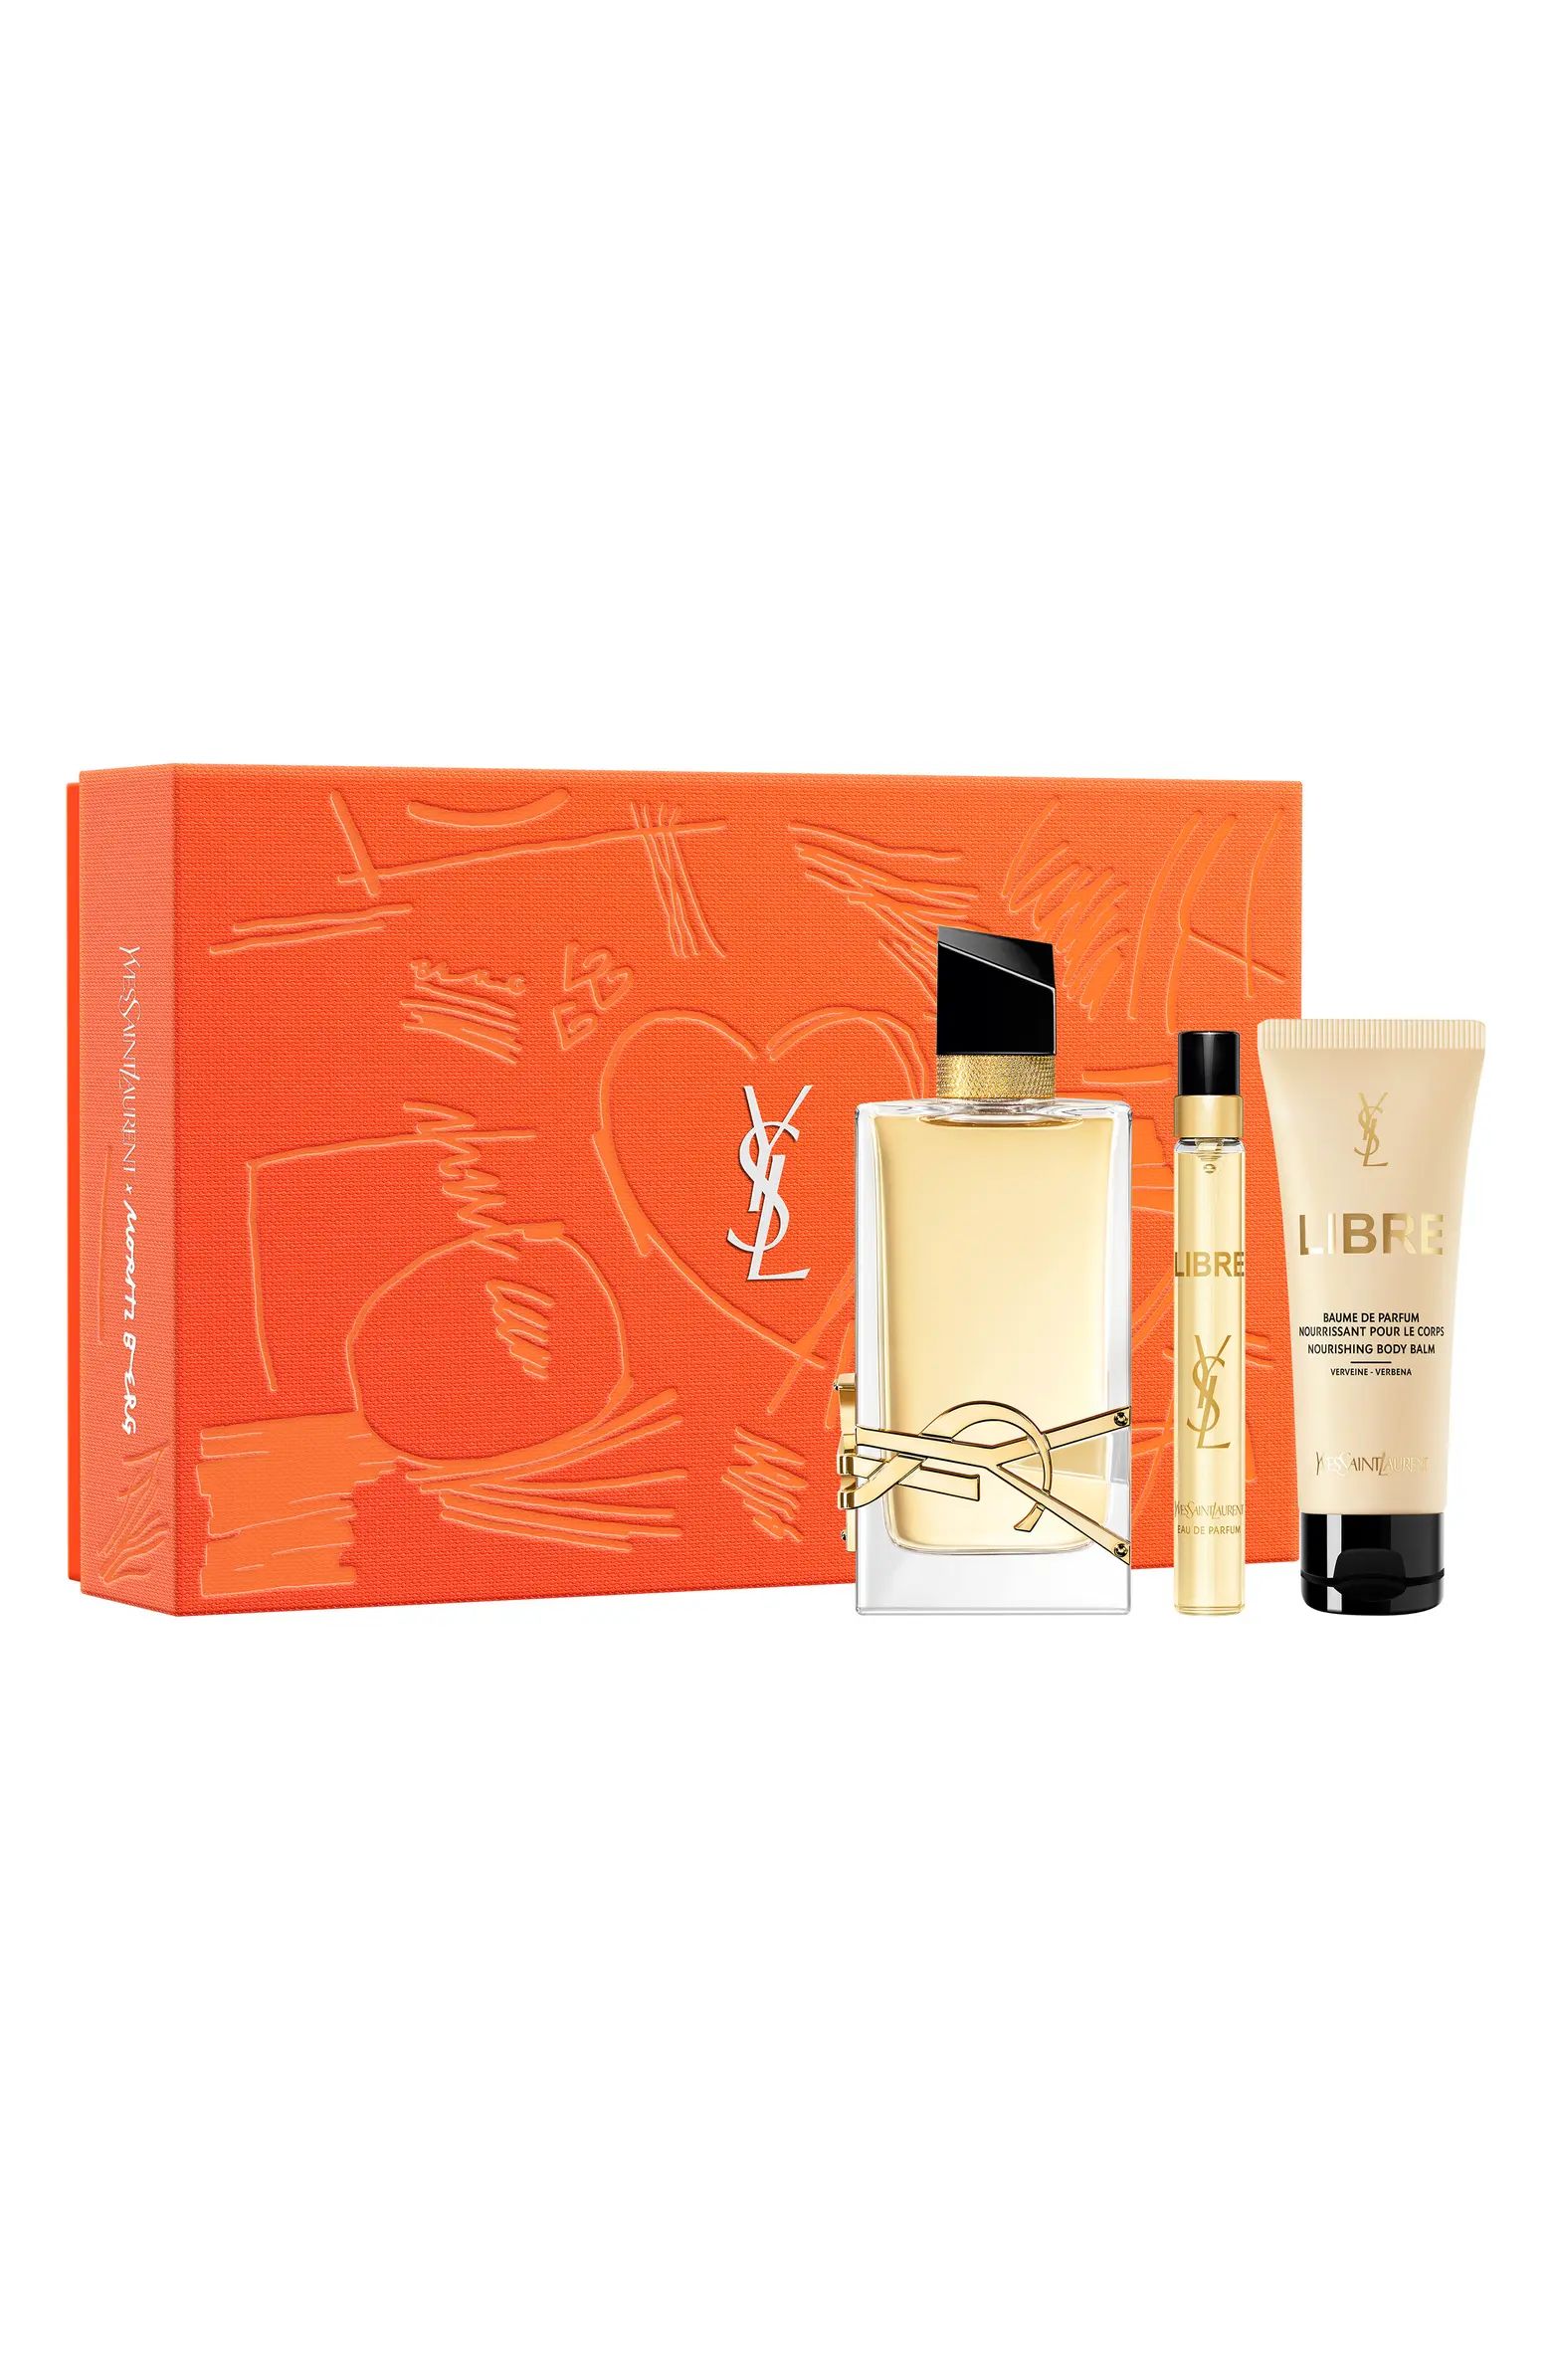 Yves Saint Laurent Libre Eau de Parfum Gift Set $215 Value | Nordstrom | Nordstrom